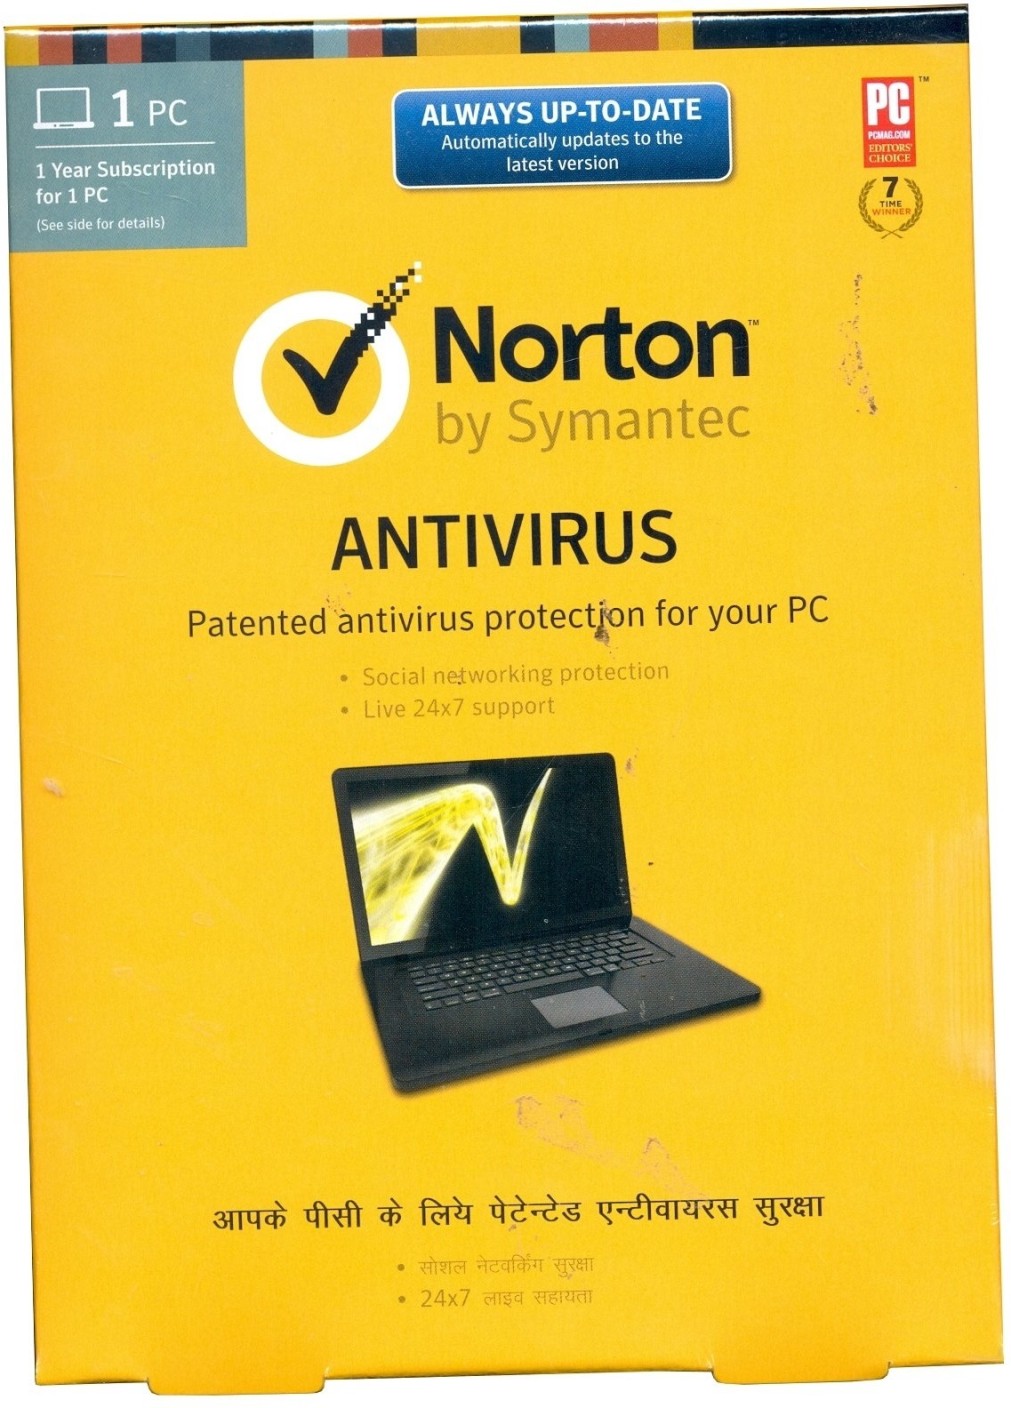 Norton antivirus 2 year subscription